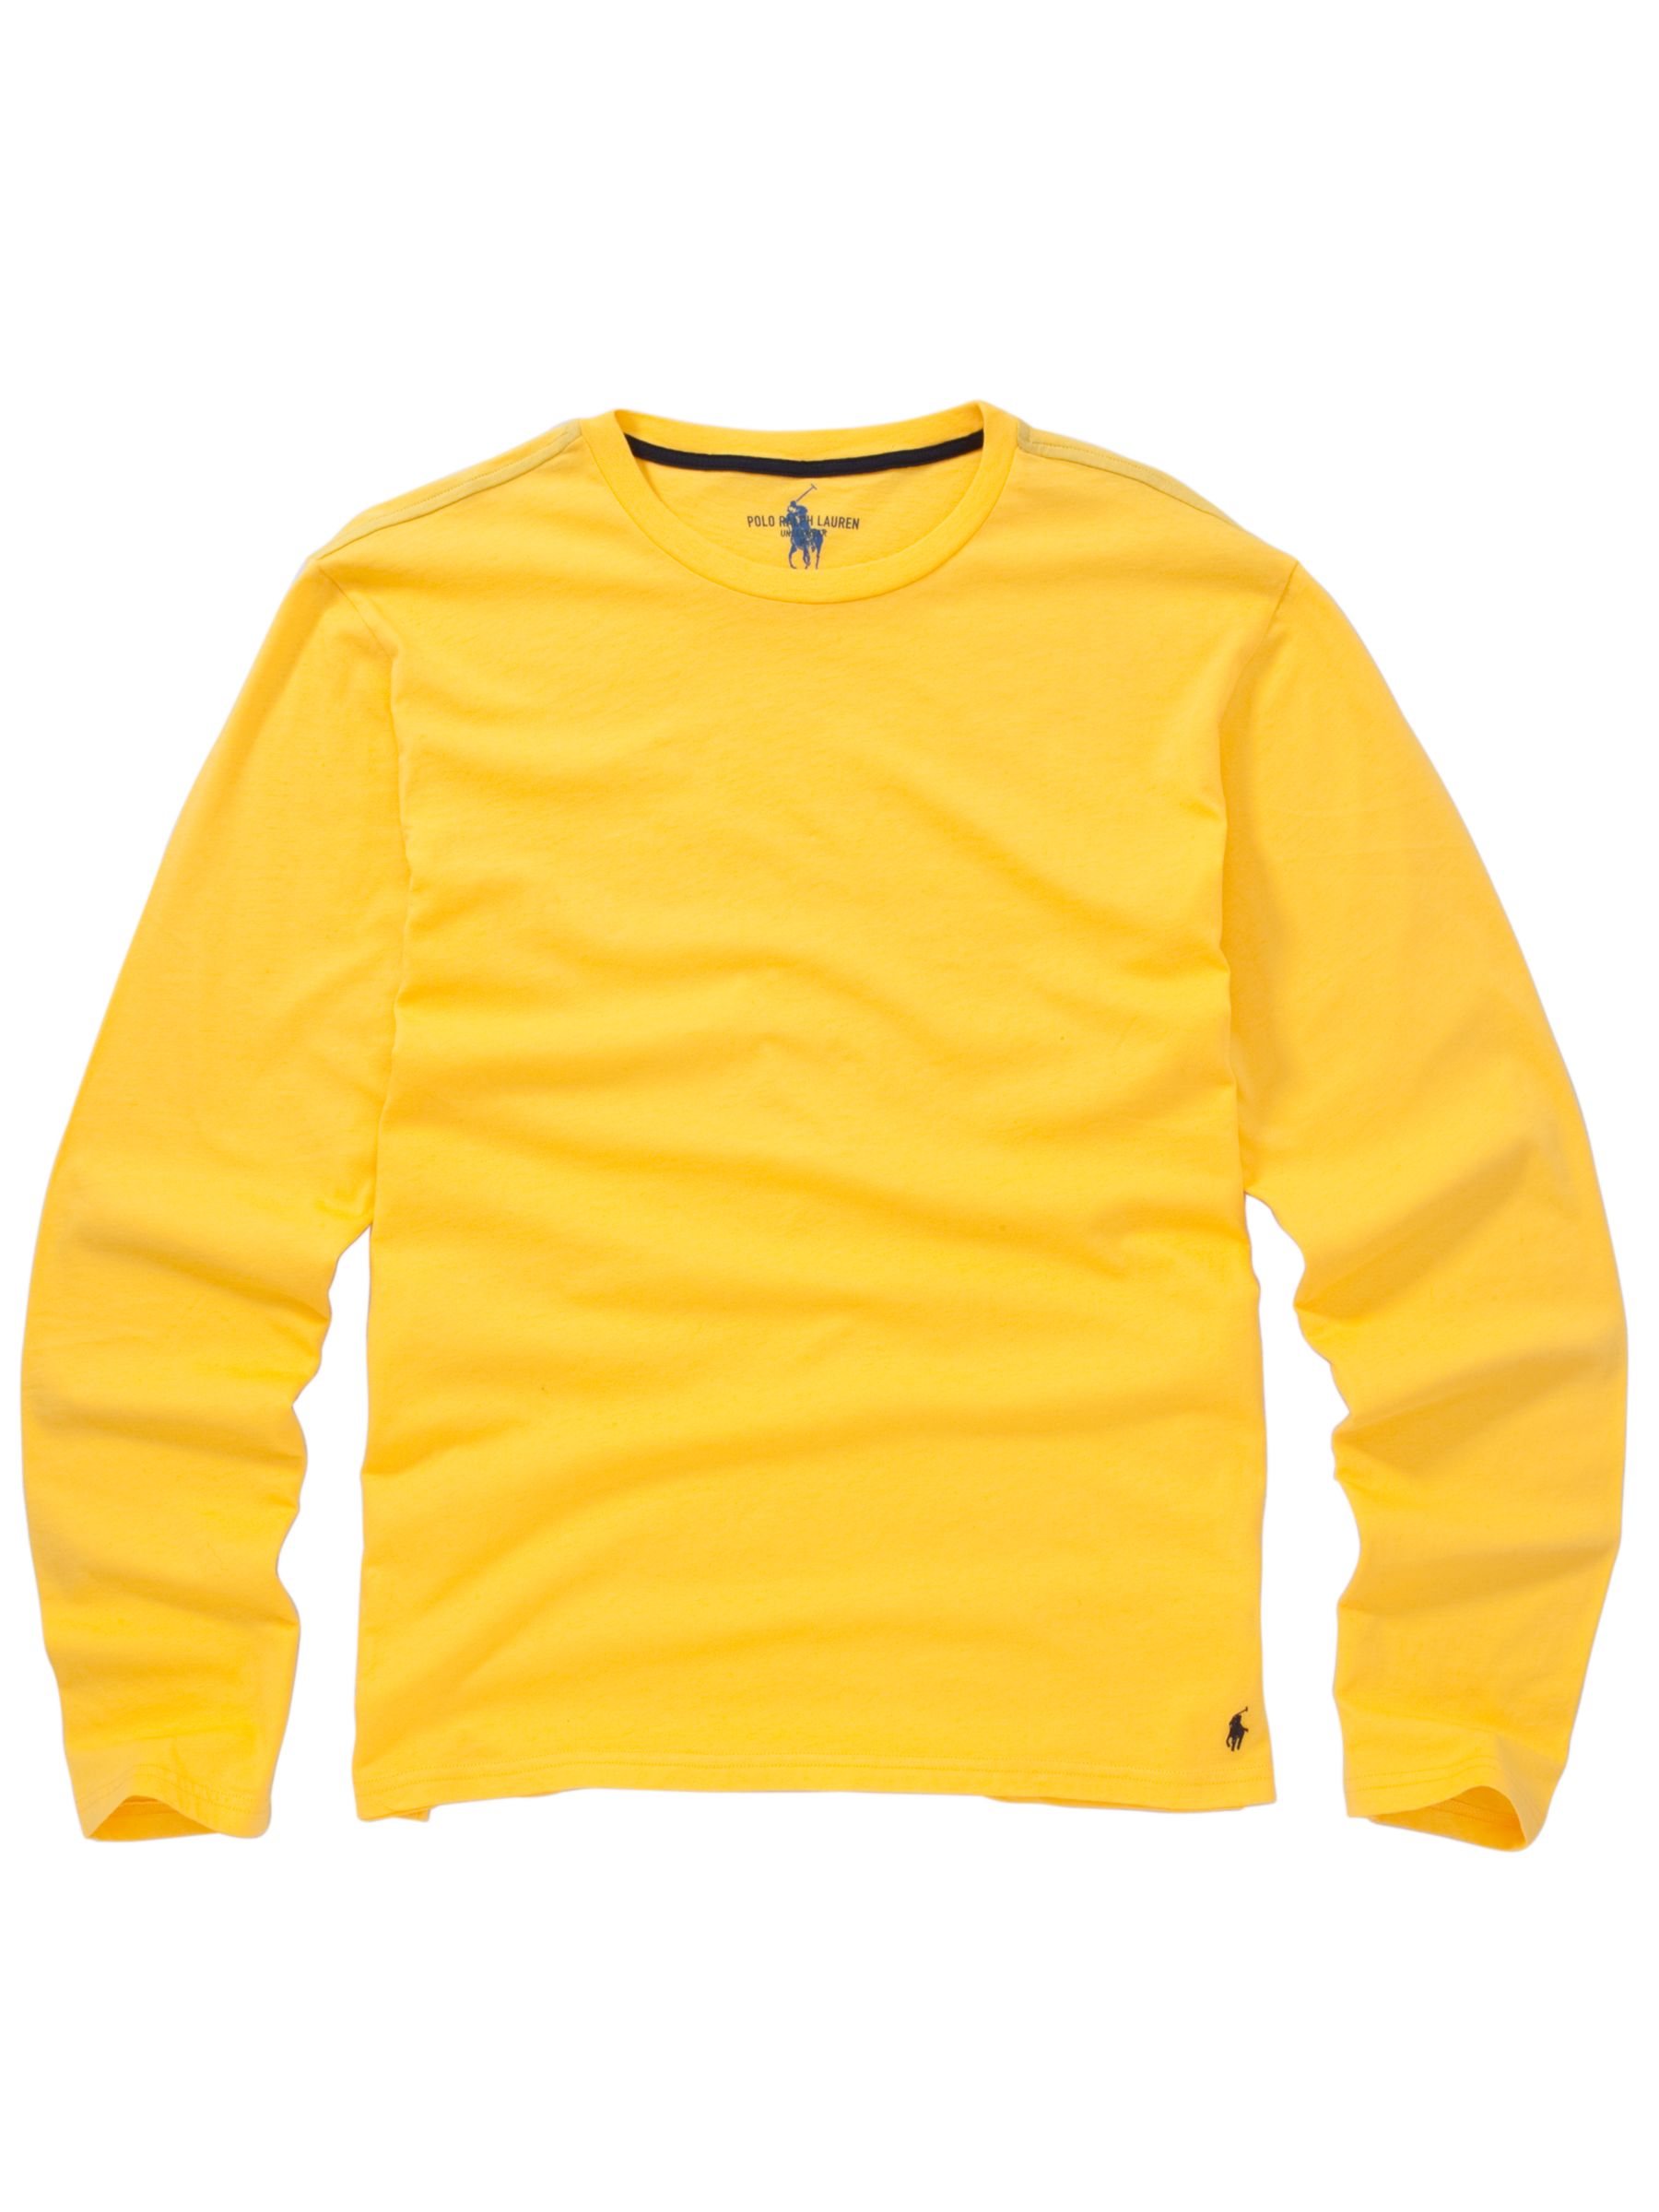 Polo Ralph Lauren Long Sleeve T-Shirt, Yellow